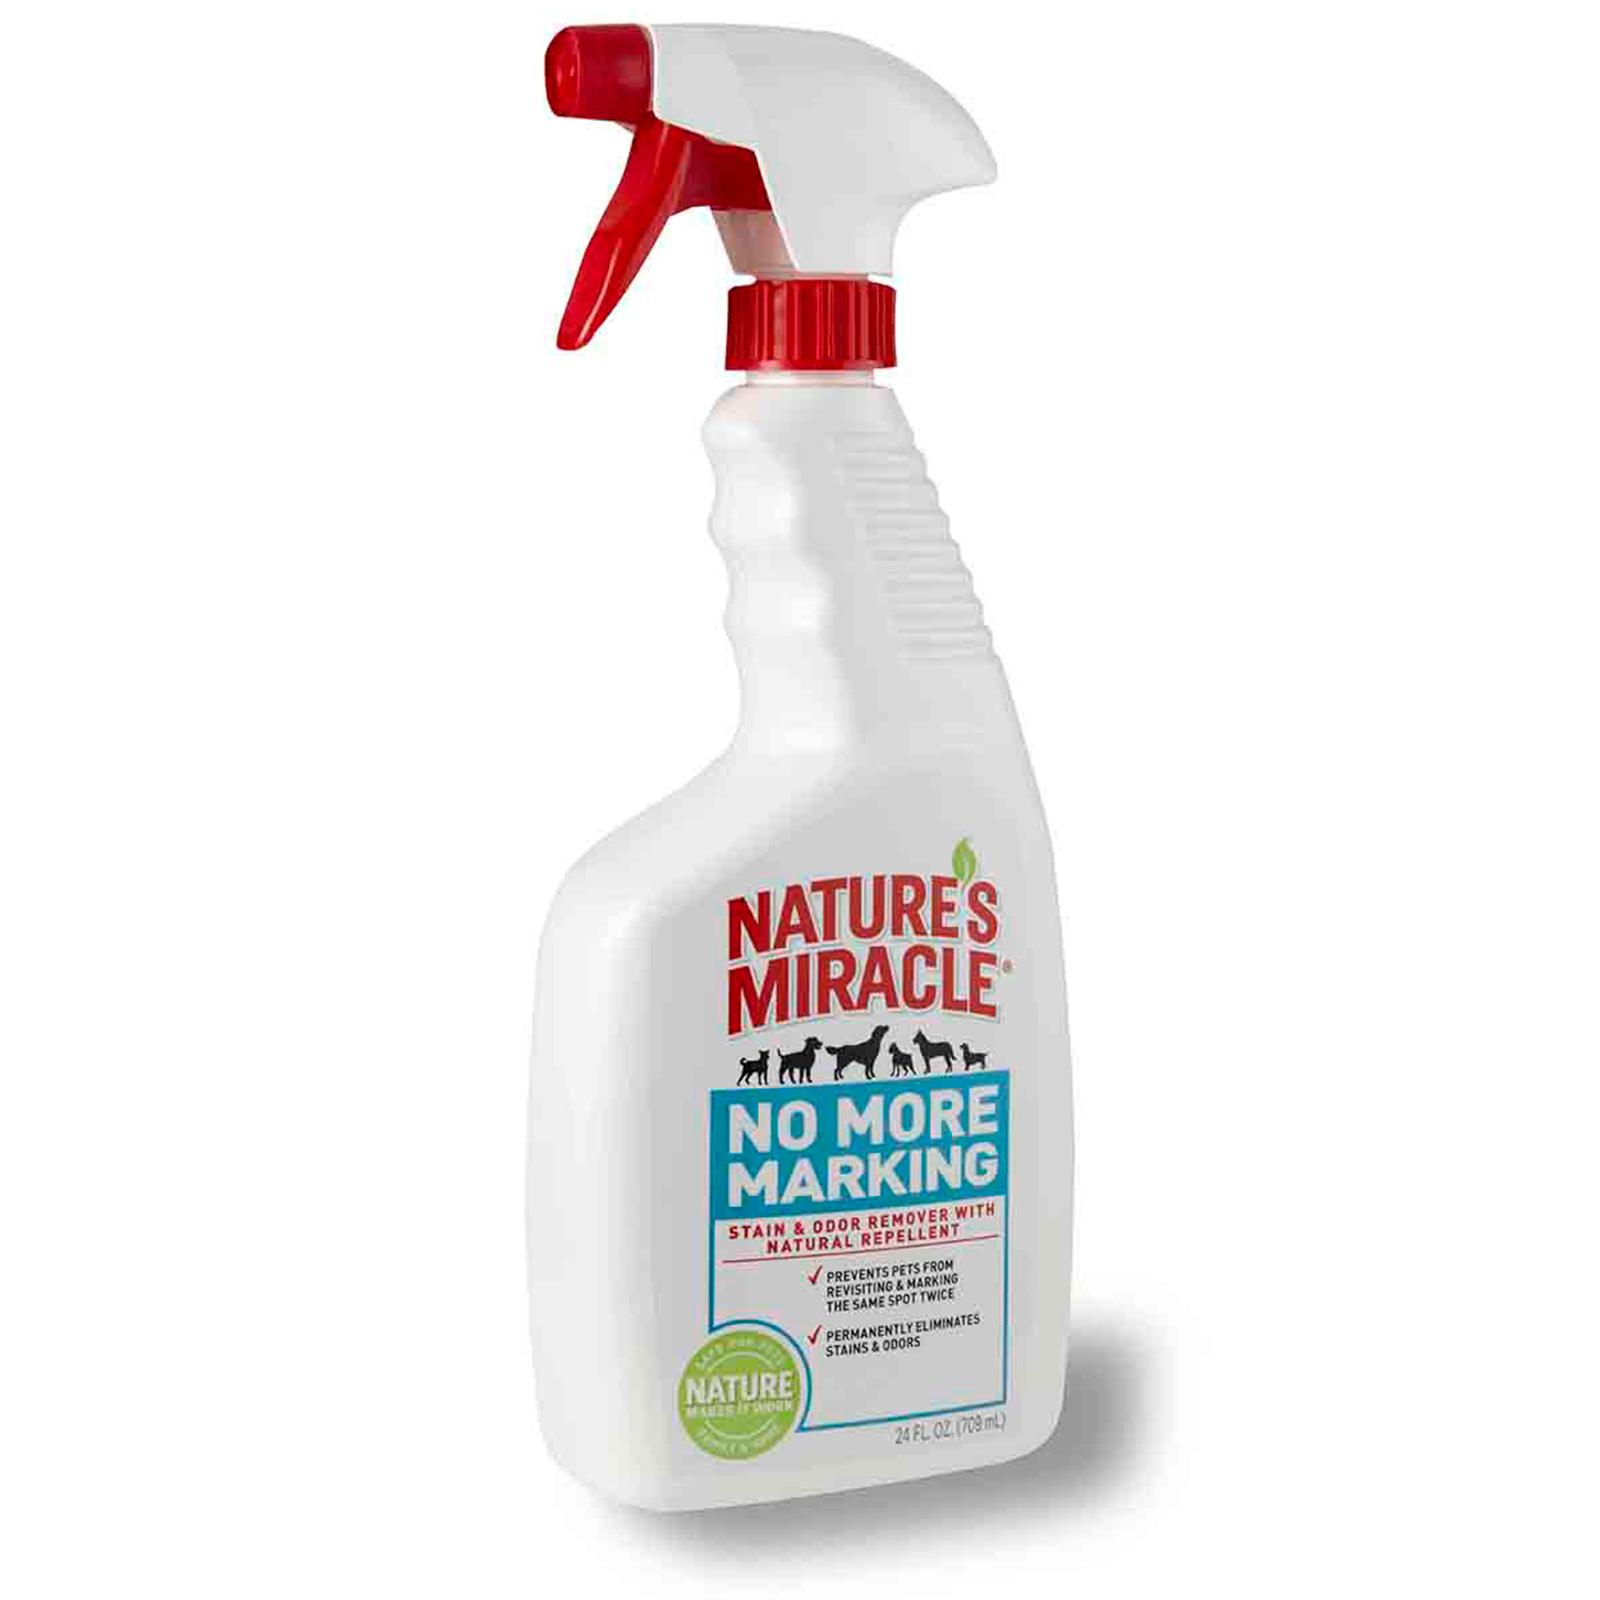 Nature's Miracle Спрей-уничтожитель пятен и запахов против повторных меток для собак,709 мл